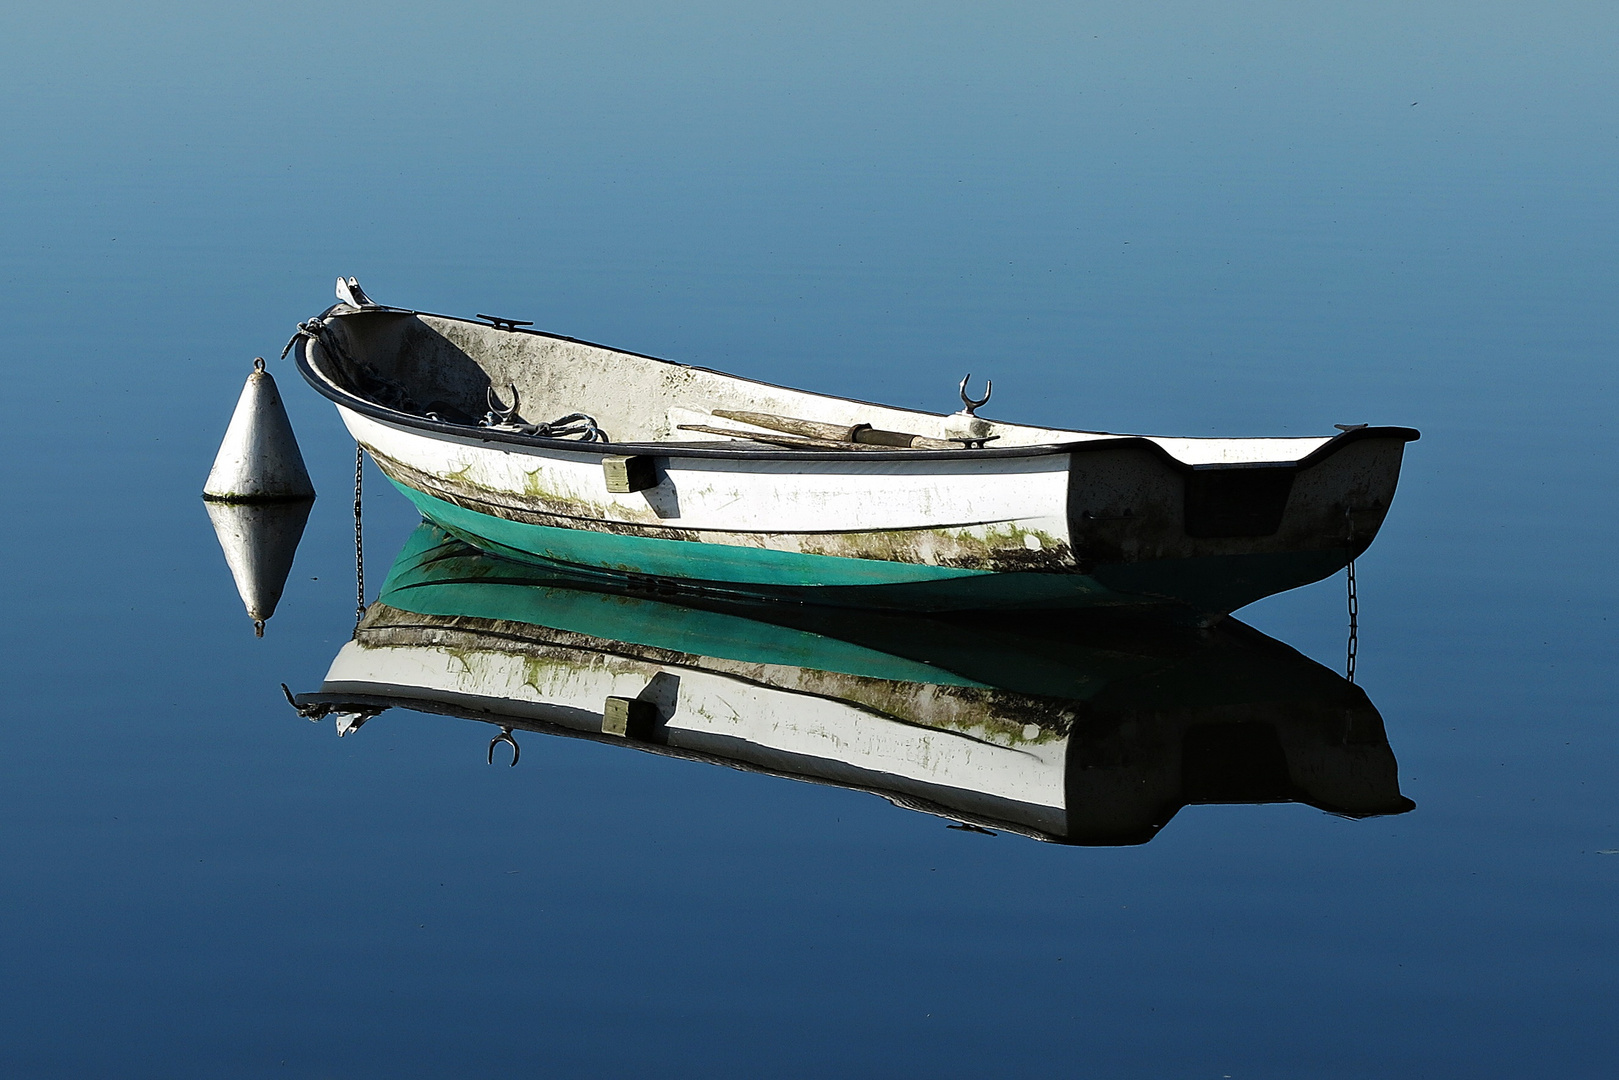 Still ruht das Fischerboot auf dem Großen Plöner See